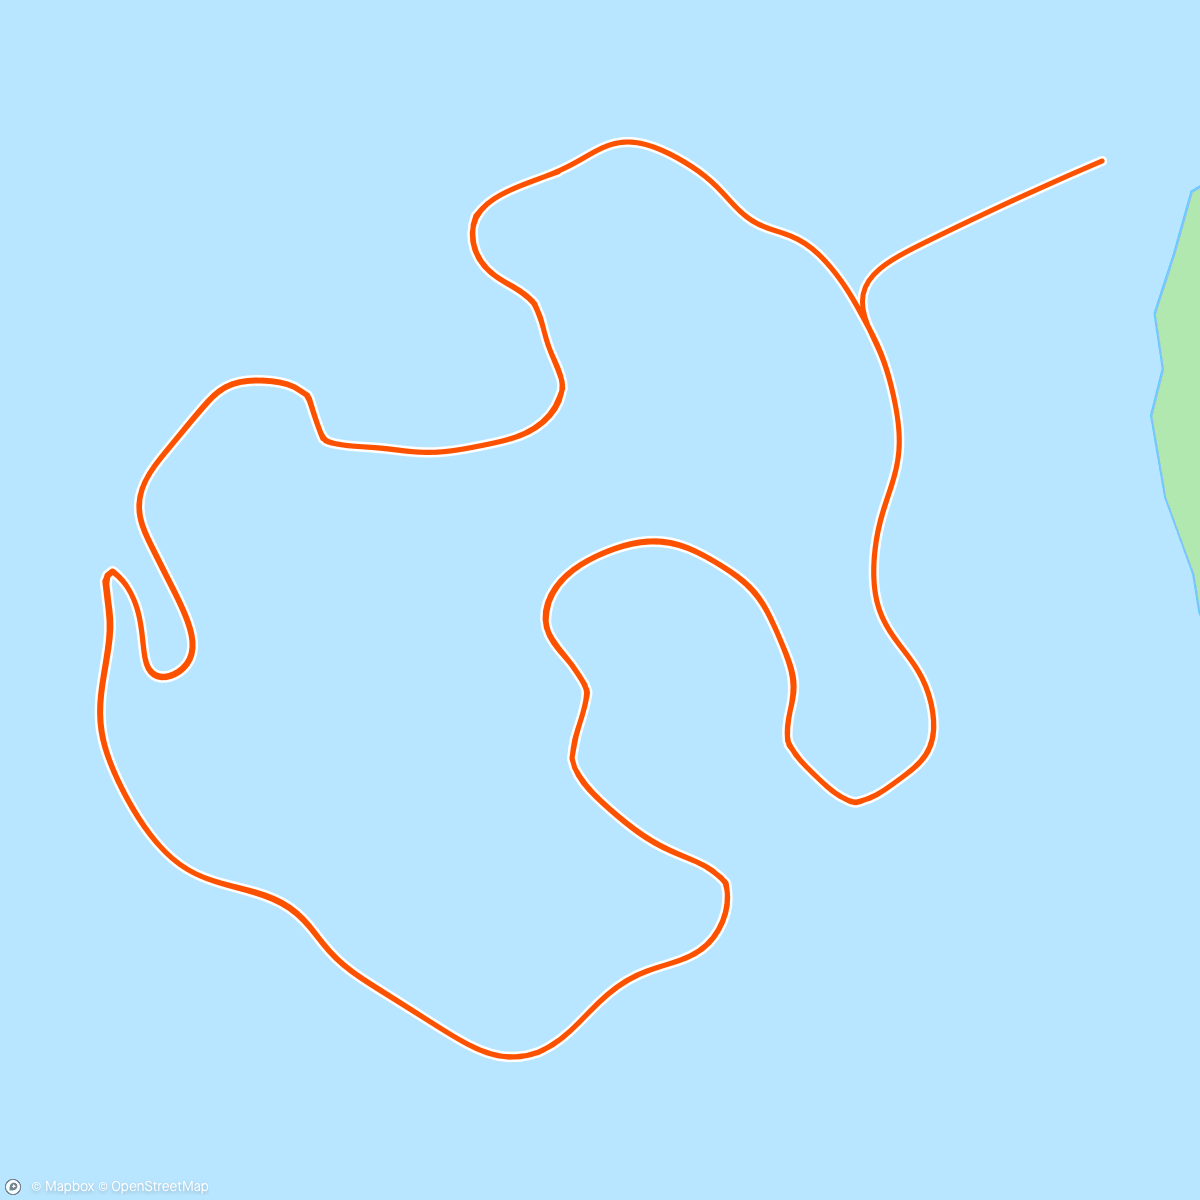 アクティビティ「Zwift - Volcano Circuit in Watopia」の地図